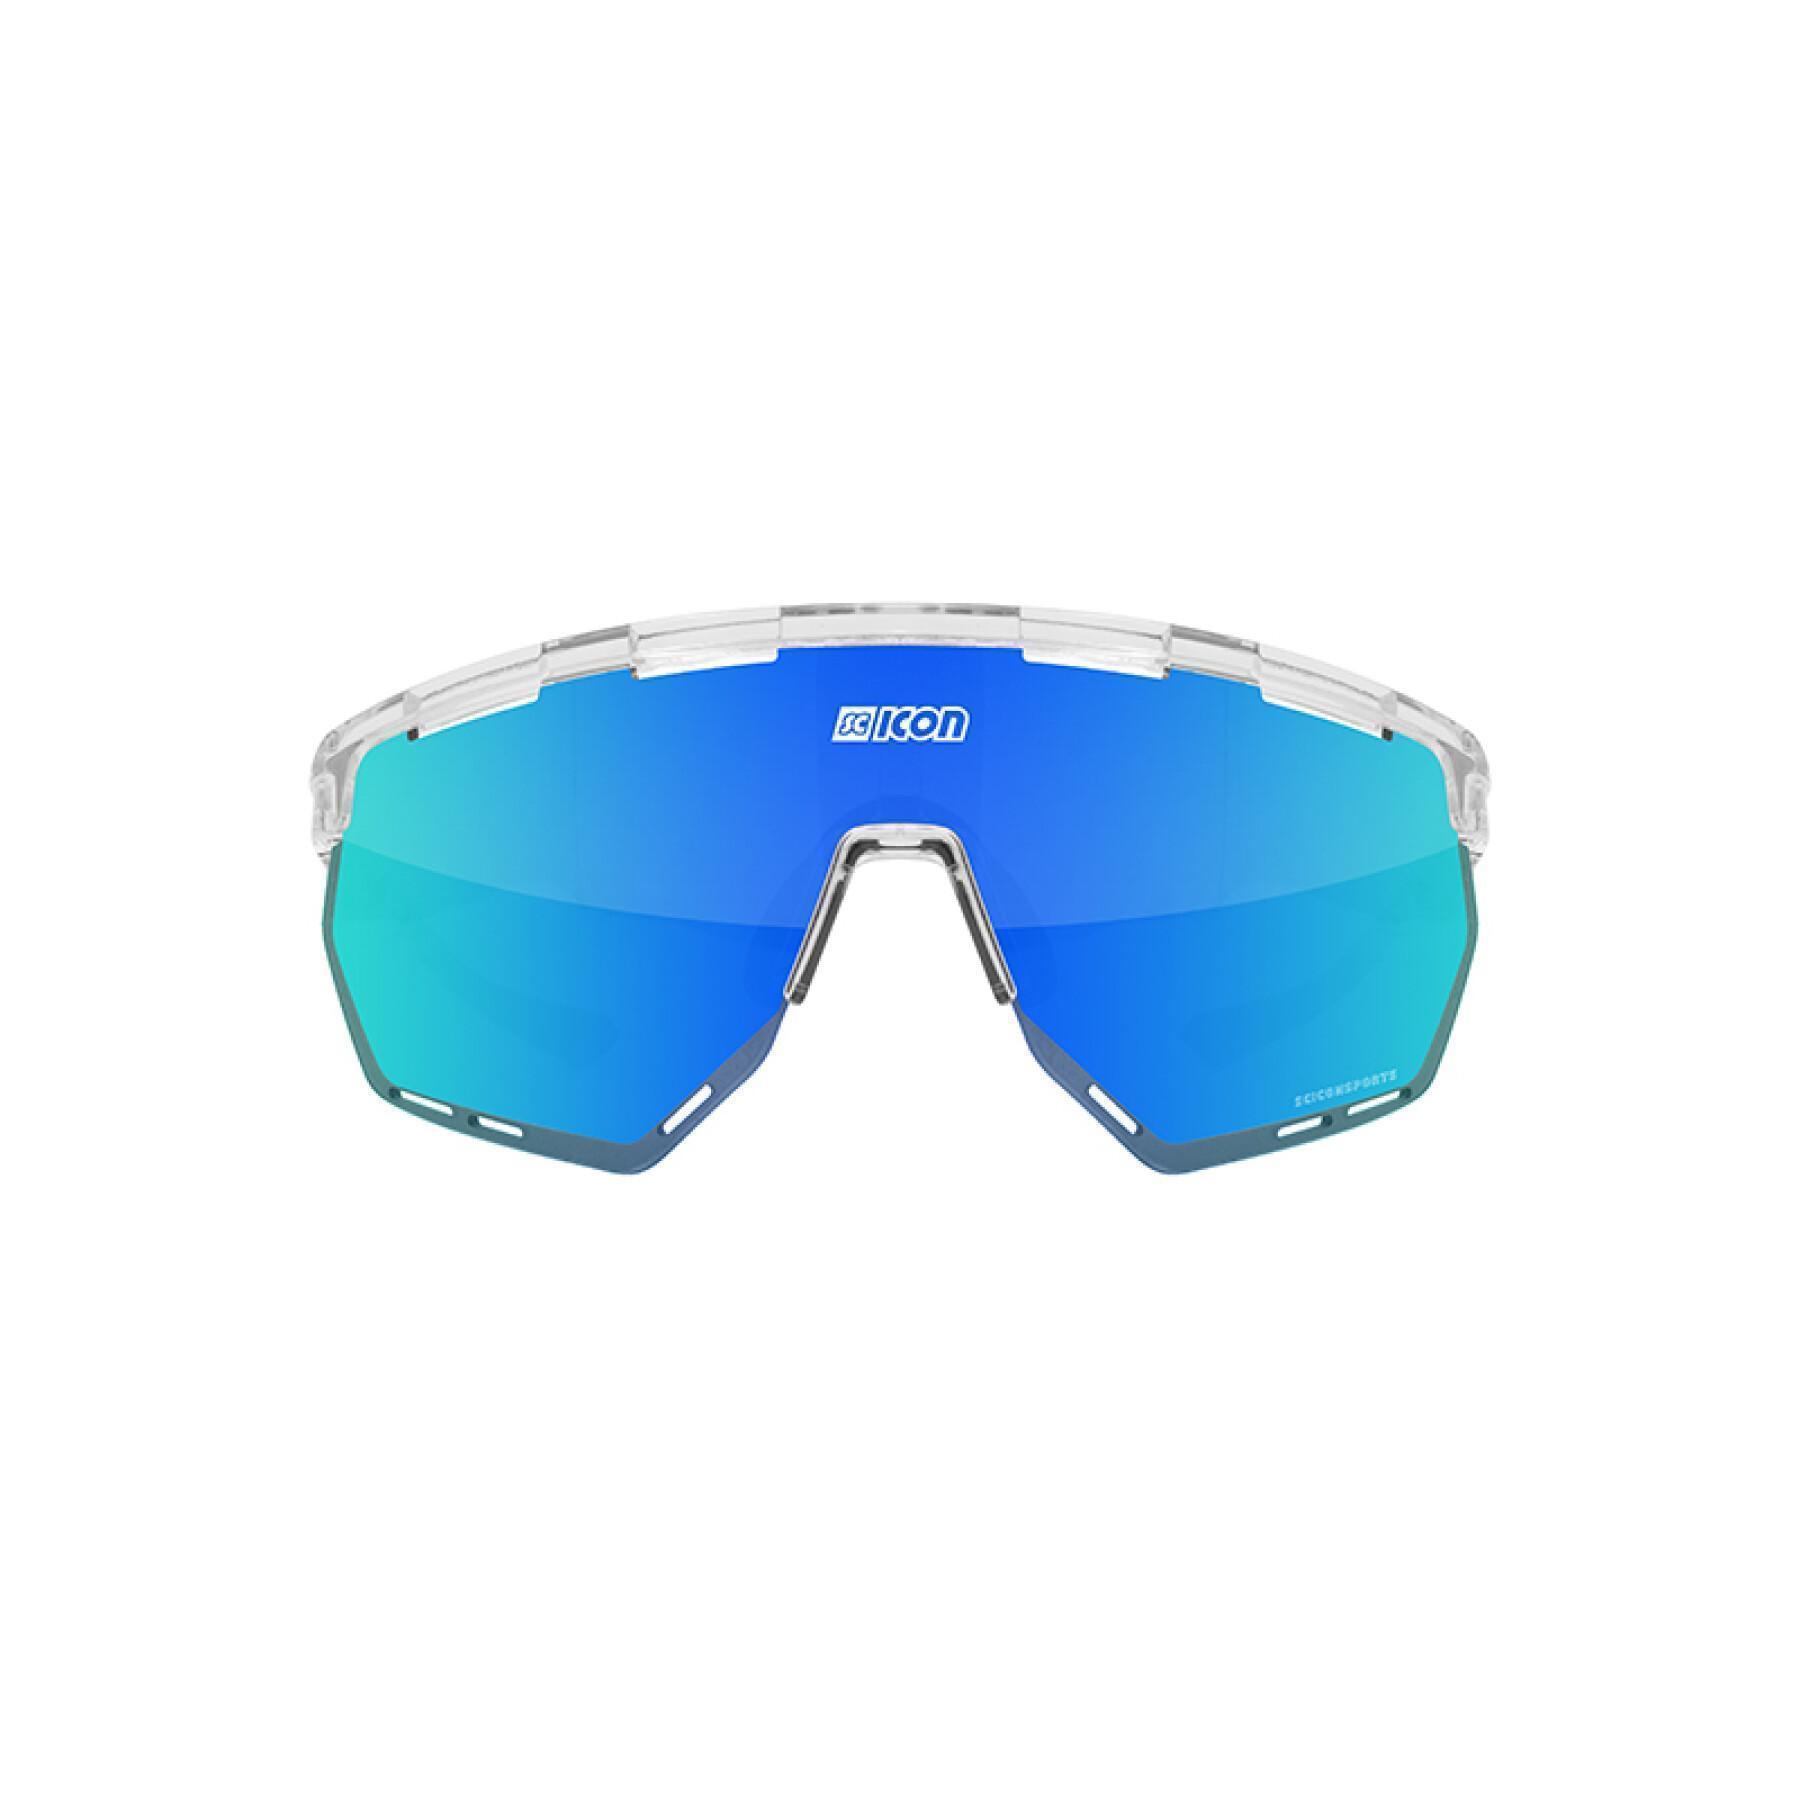 Occhiali Scicon aerowing scnpp verre multi-reflet bleues